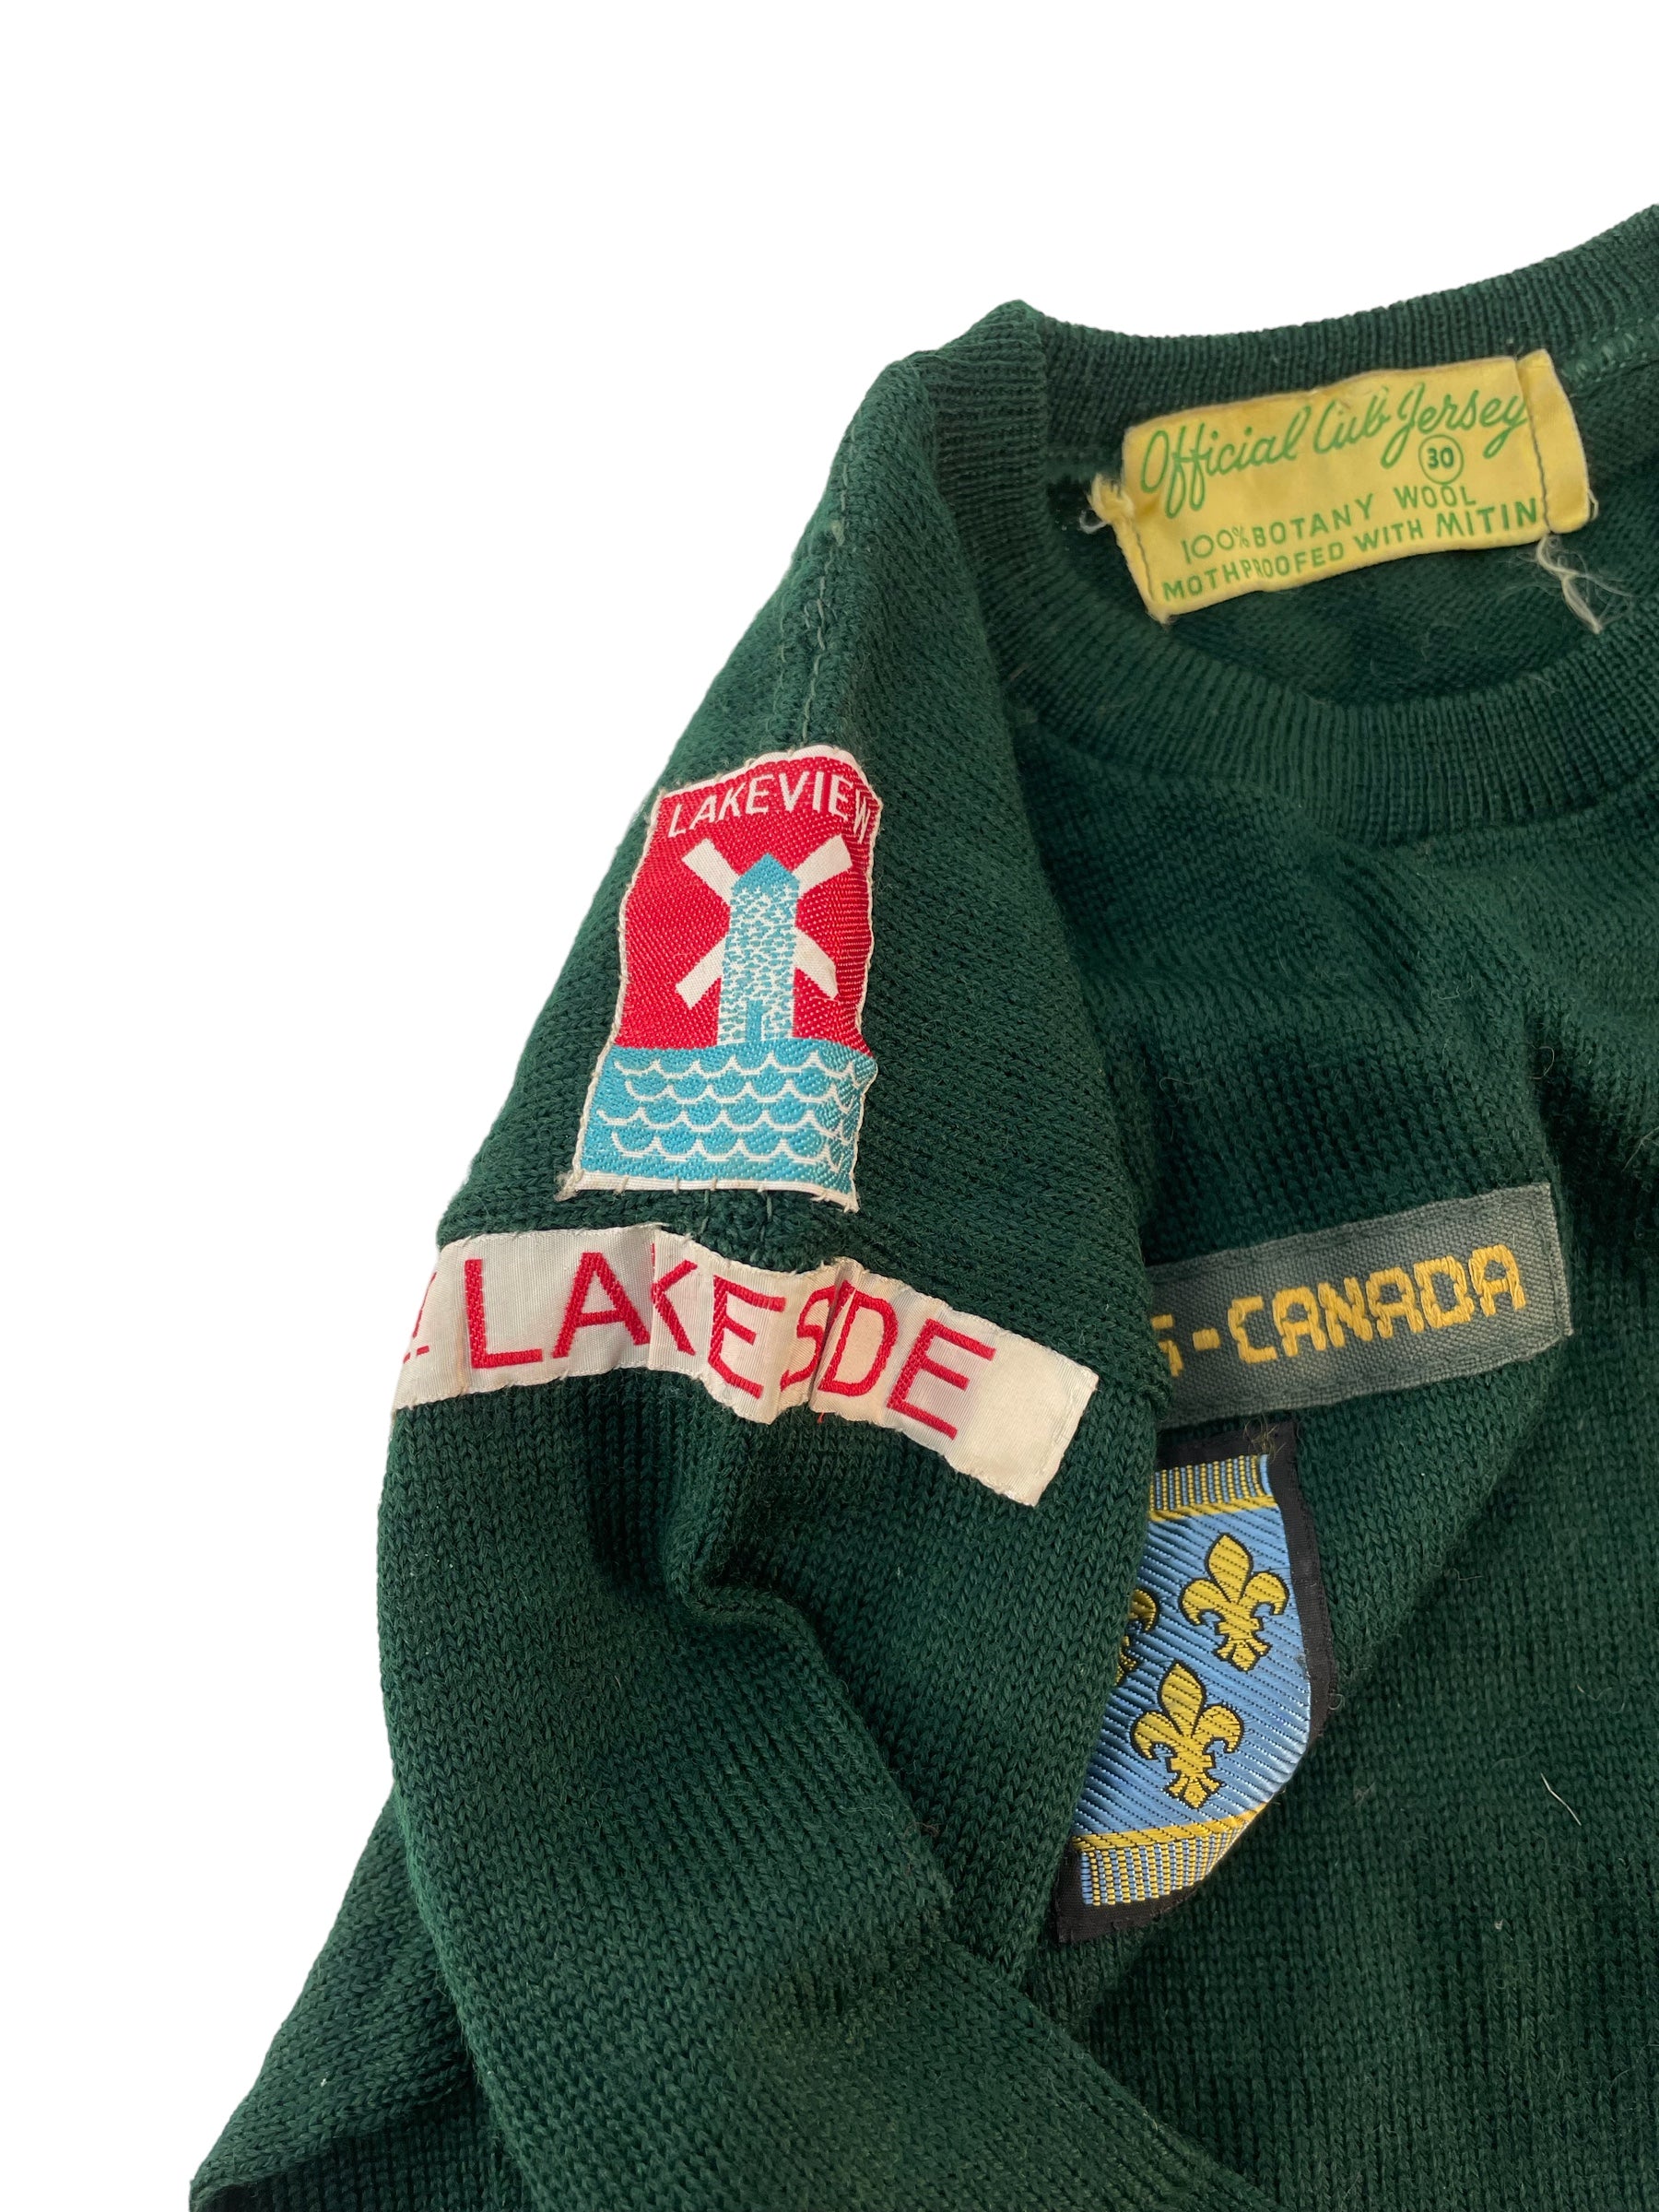 Pull et casquette des Boy Scouts du Canada des années 1960